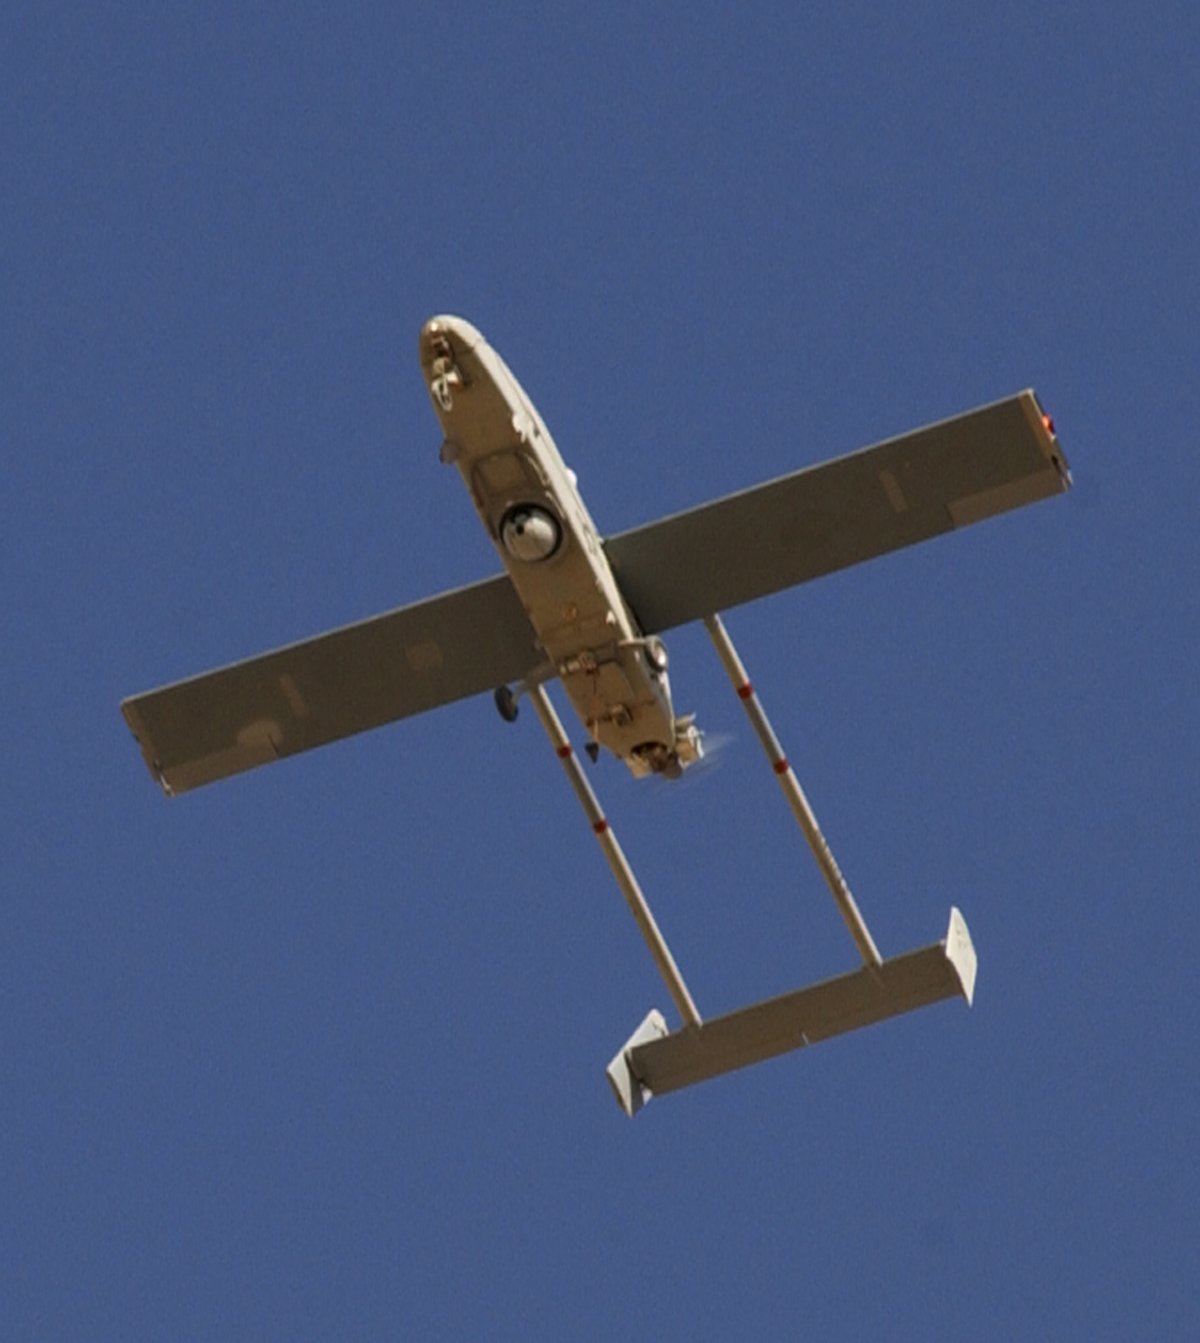 Pioneer_Unmanned_Aerial_Vehicle.jpg